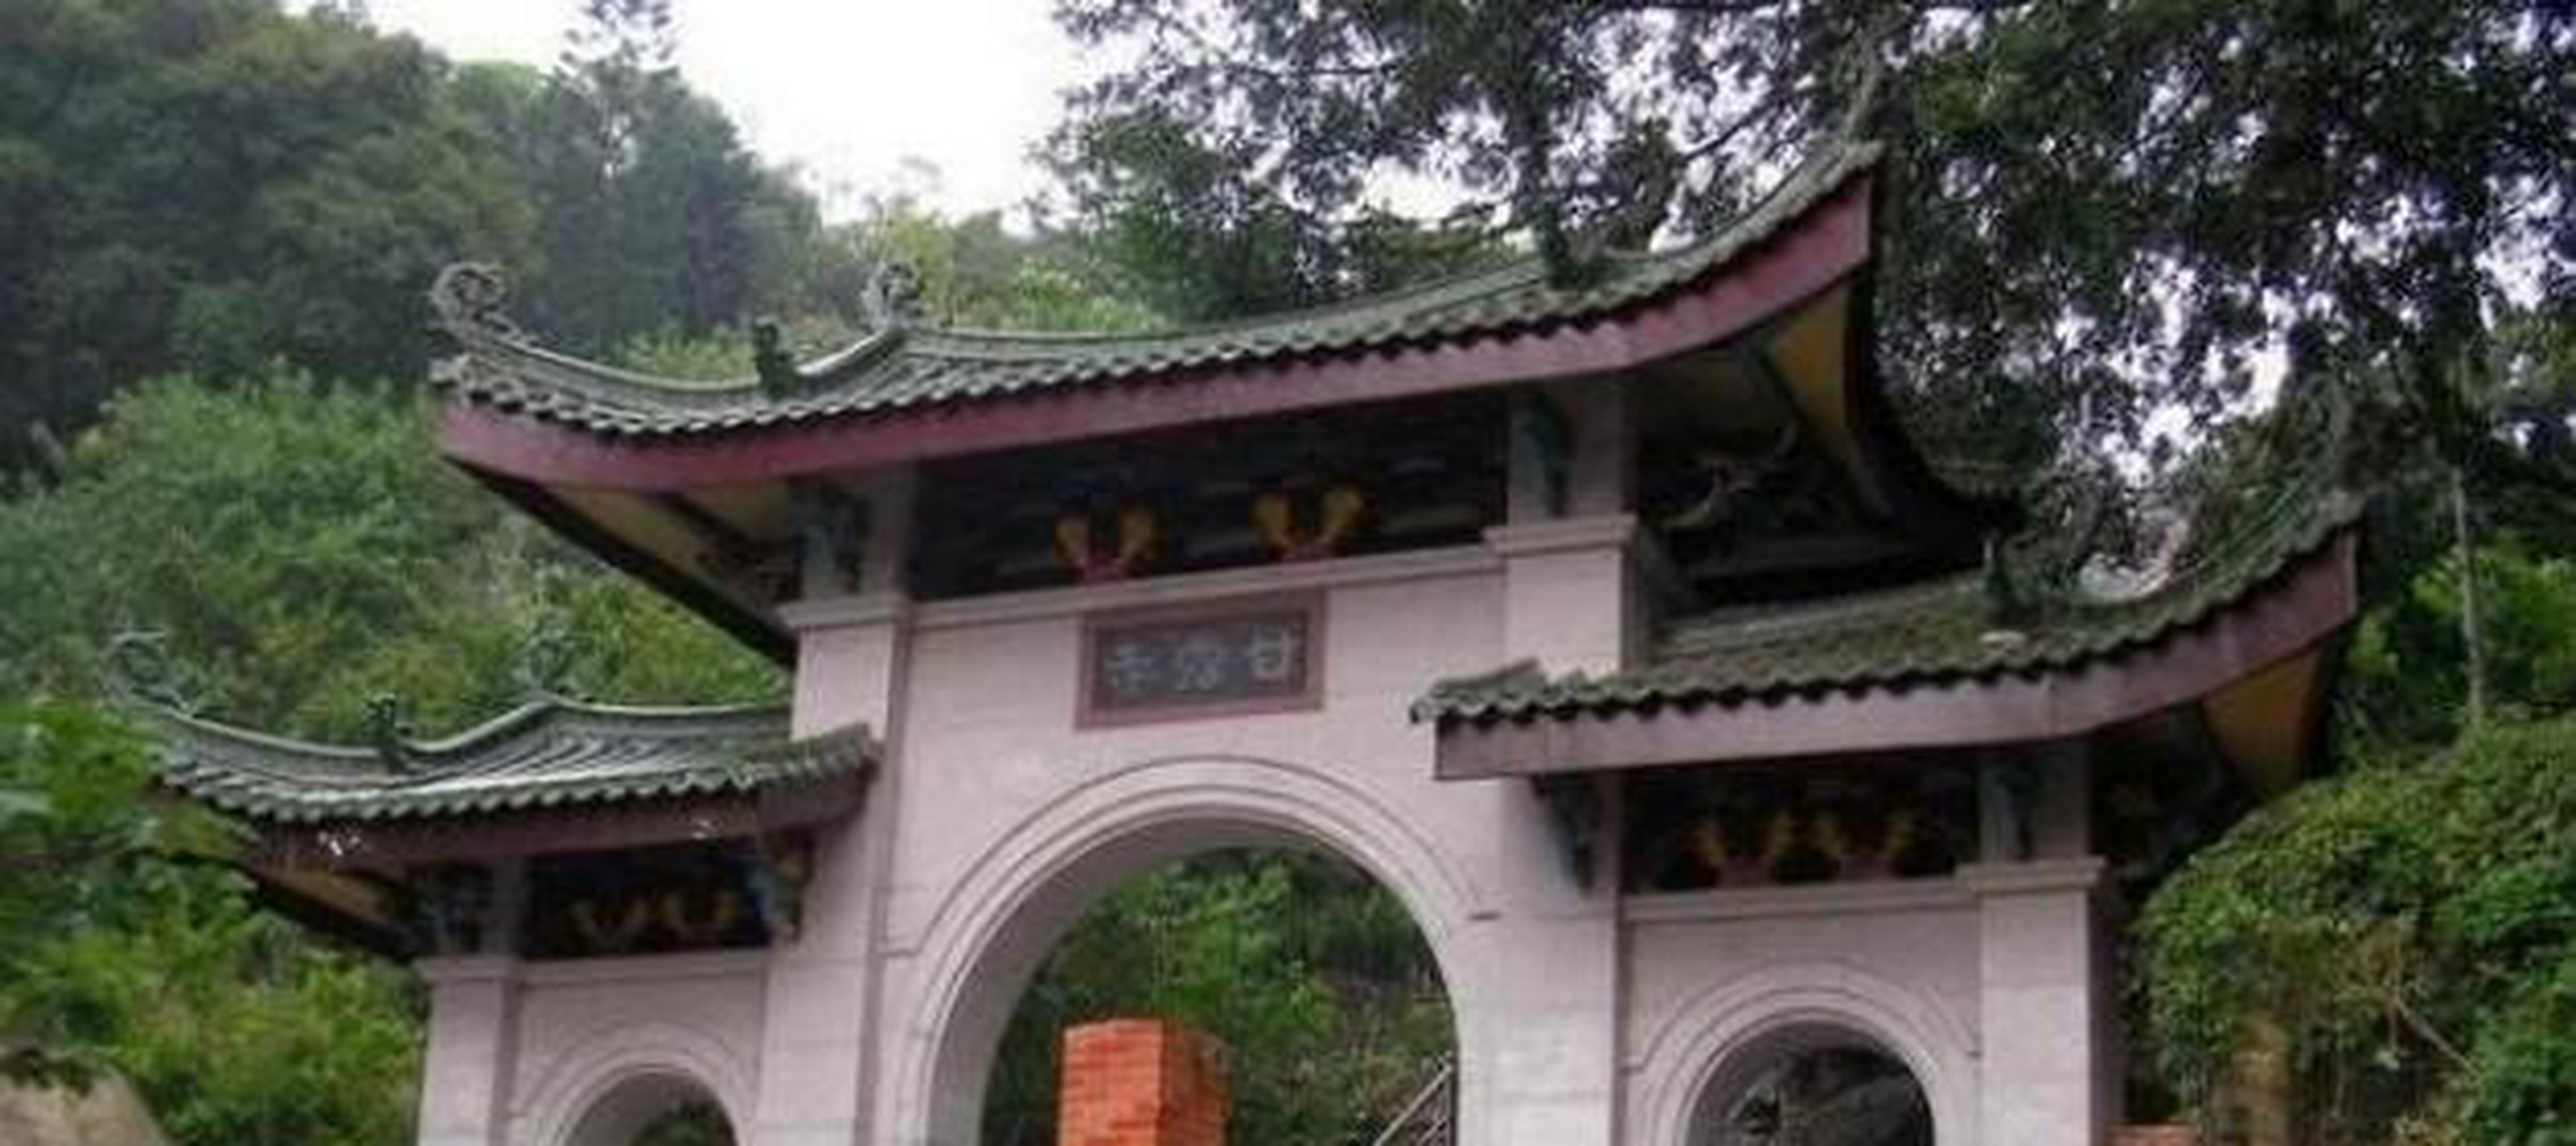 地处于广东潮州的这座寺庙,它的名字叫做甘露寺,事实上,不管是从寺庙